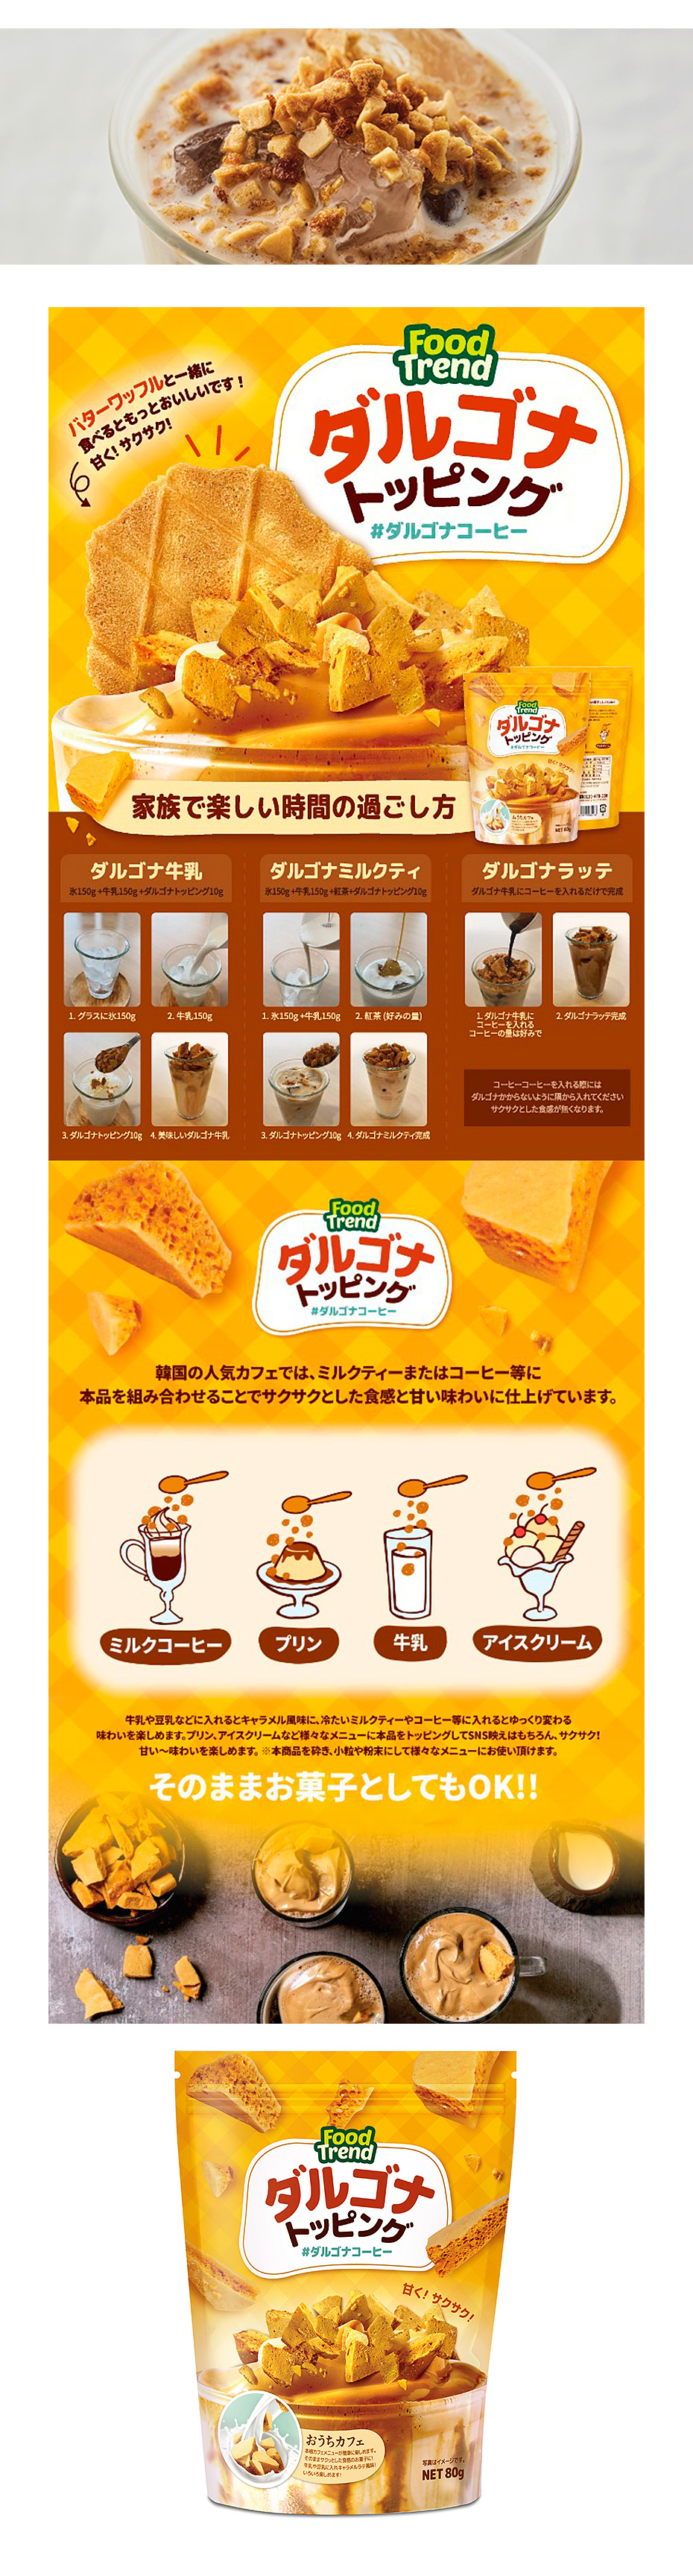 FOOD TREND] ダルゴナトッピング(焼き菓子/トッピング材)/80g ダルゴナコーヒー おやつ :et030:いいとこショップ - 通販 -  Yahoo!ショッピング